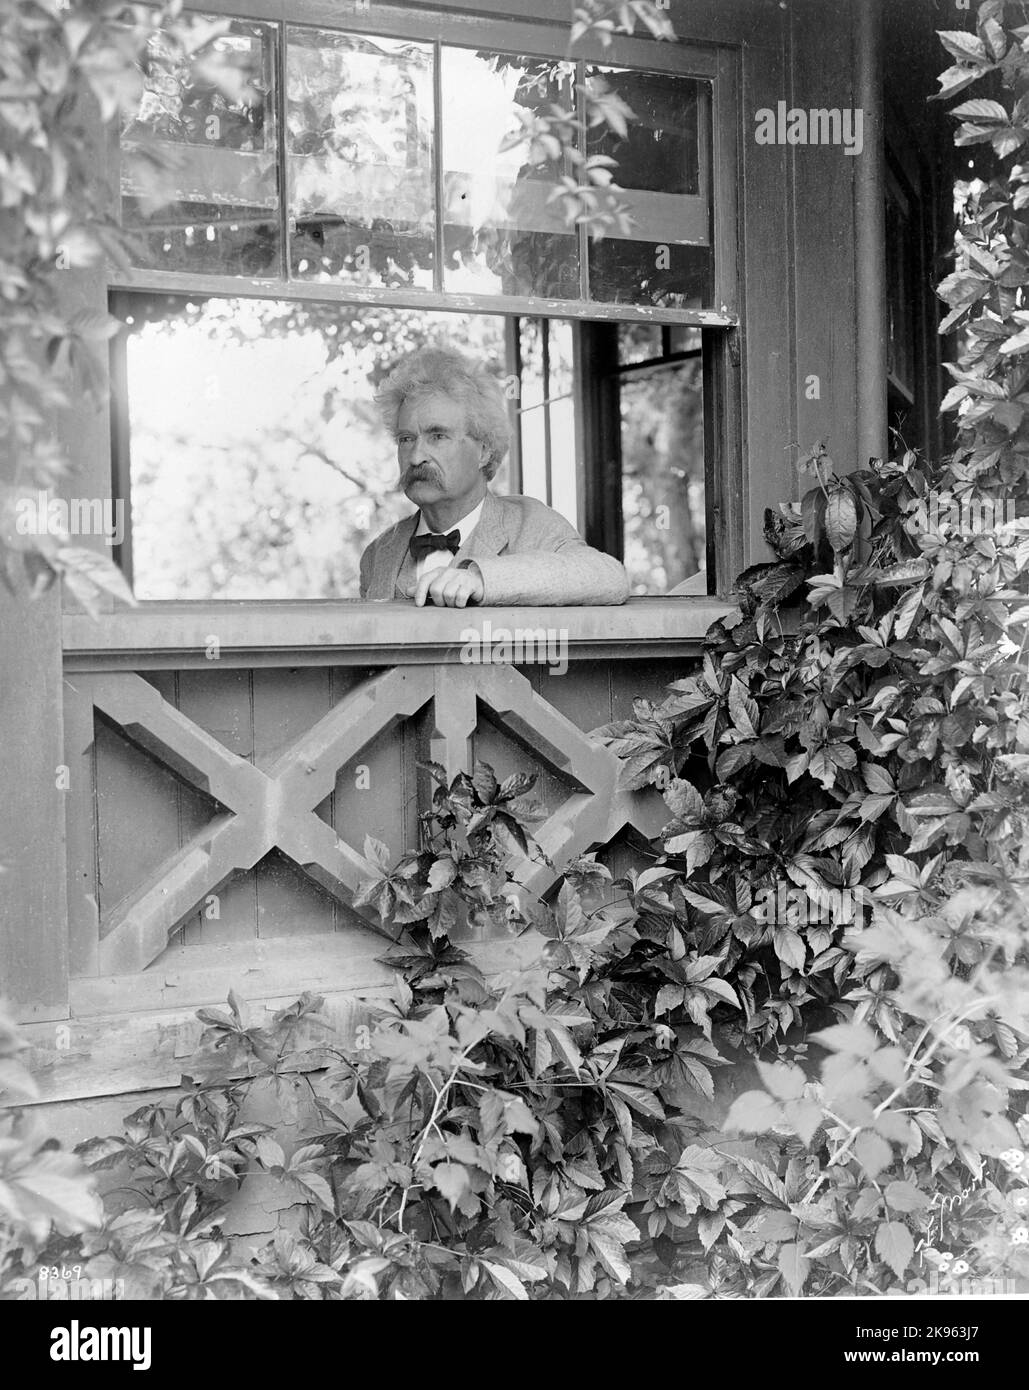 Mark Twaiin (Clemens, Samuel Langhorne ) - écrivain américain - ( 1835-1910) en 1903 par T.E. MoRR. Mark Twain, portrait tête-et-épaules, face à gauche, face à la fenêtre Banque D'Images